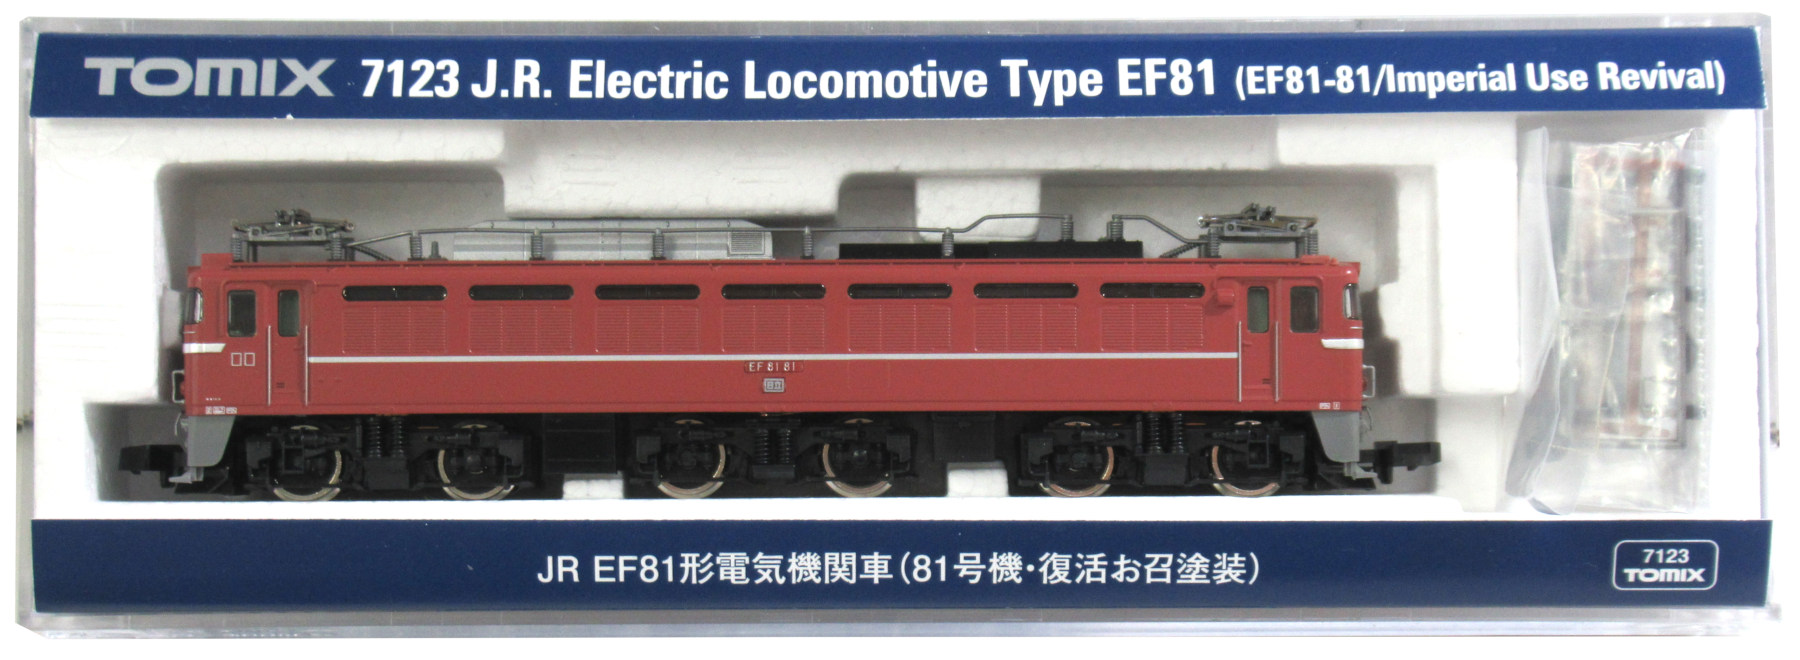 あす楽対応】 【超美品】鉄道模型 TOMIX 7123 EF81 81号機復活お召塗装